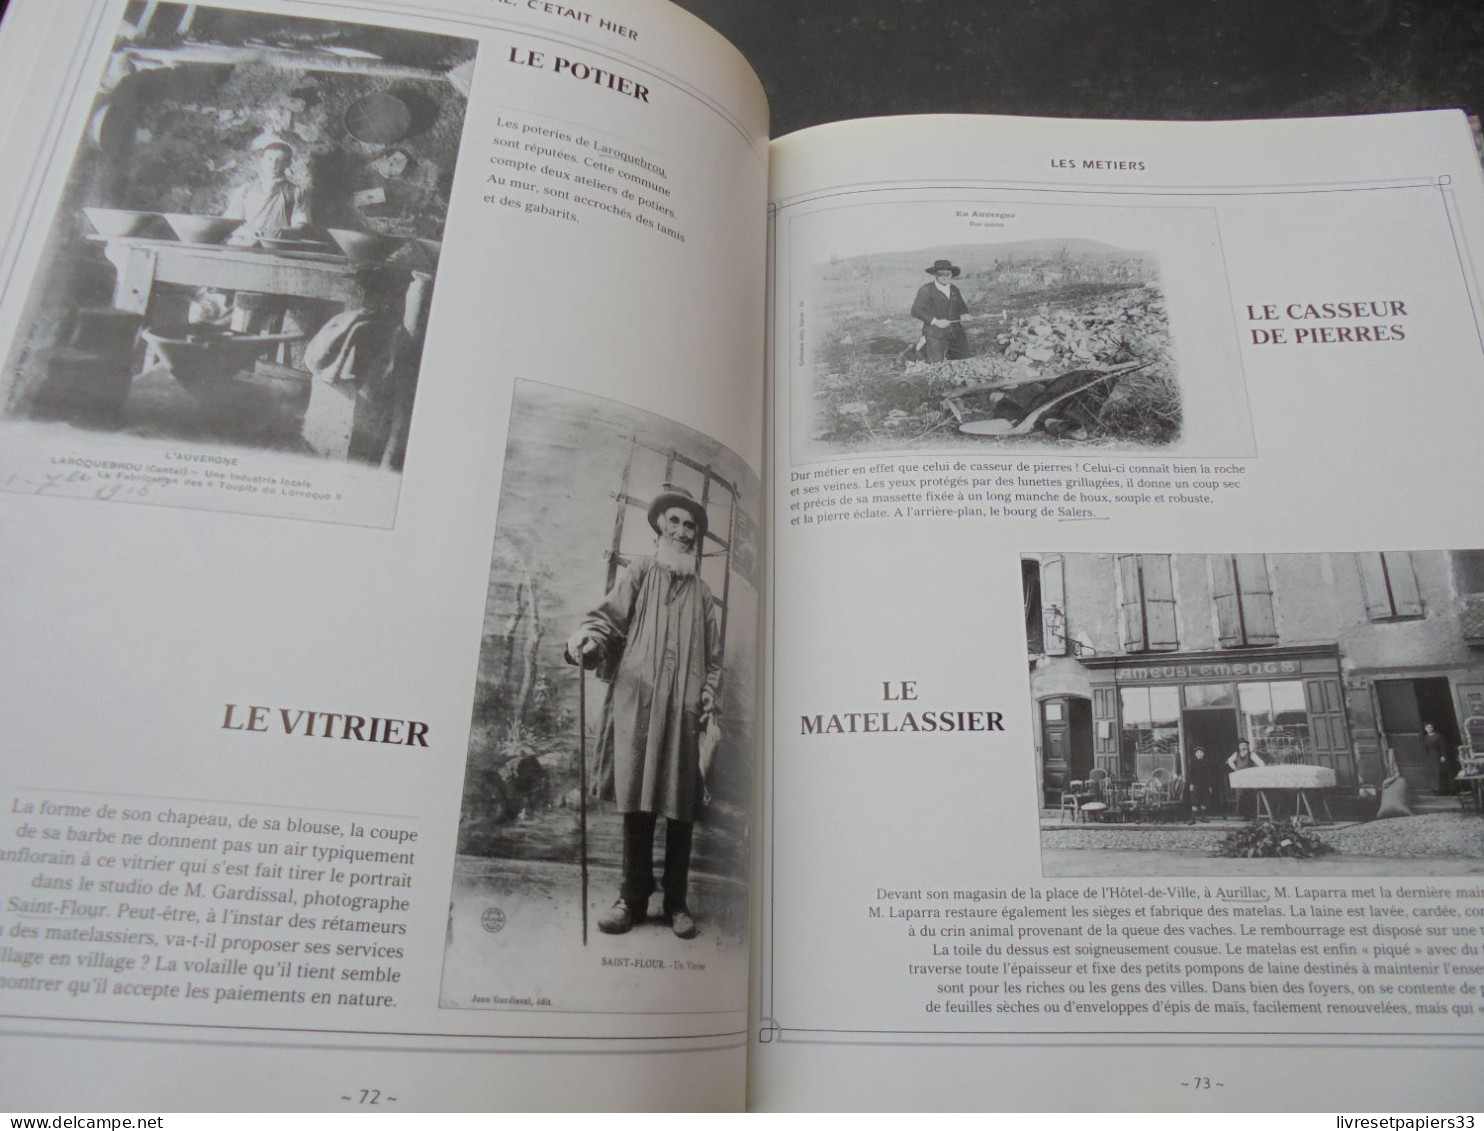 Le Cantal 1900-1920 C'Etait Hier Louis Taurant - Auvergne